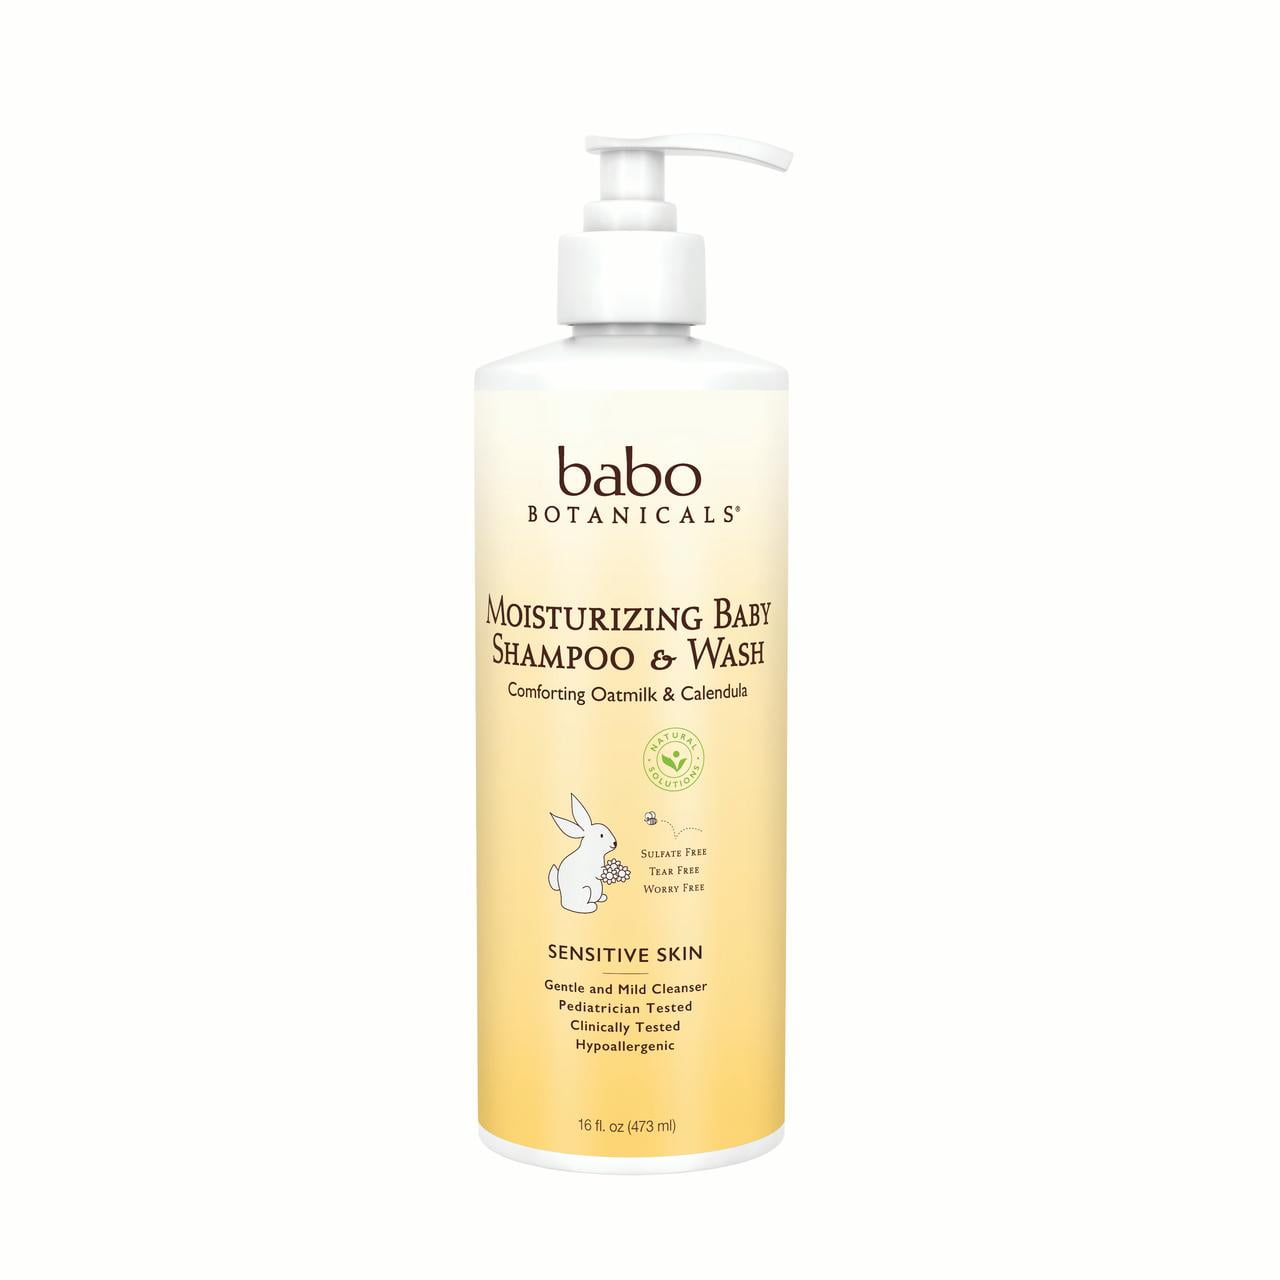 Babo Batonicals Moisturizing Baby Shampoo and Wash (Family Size) 16 oz Bottle